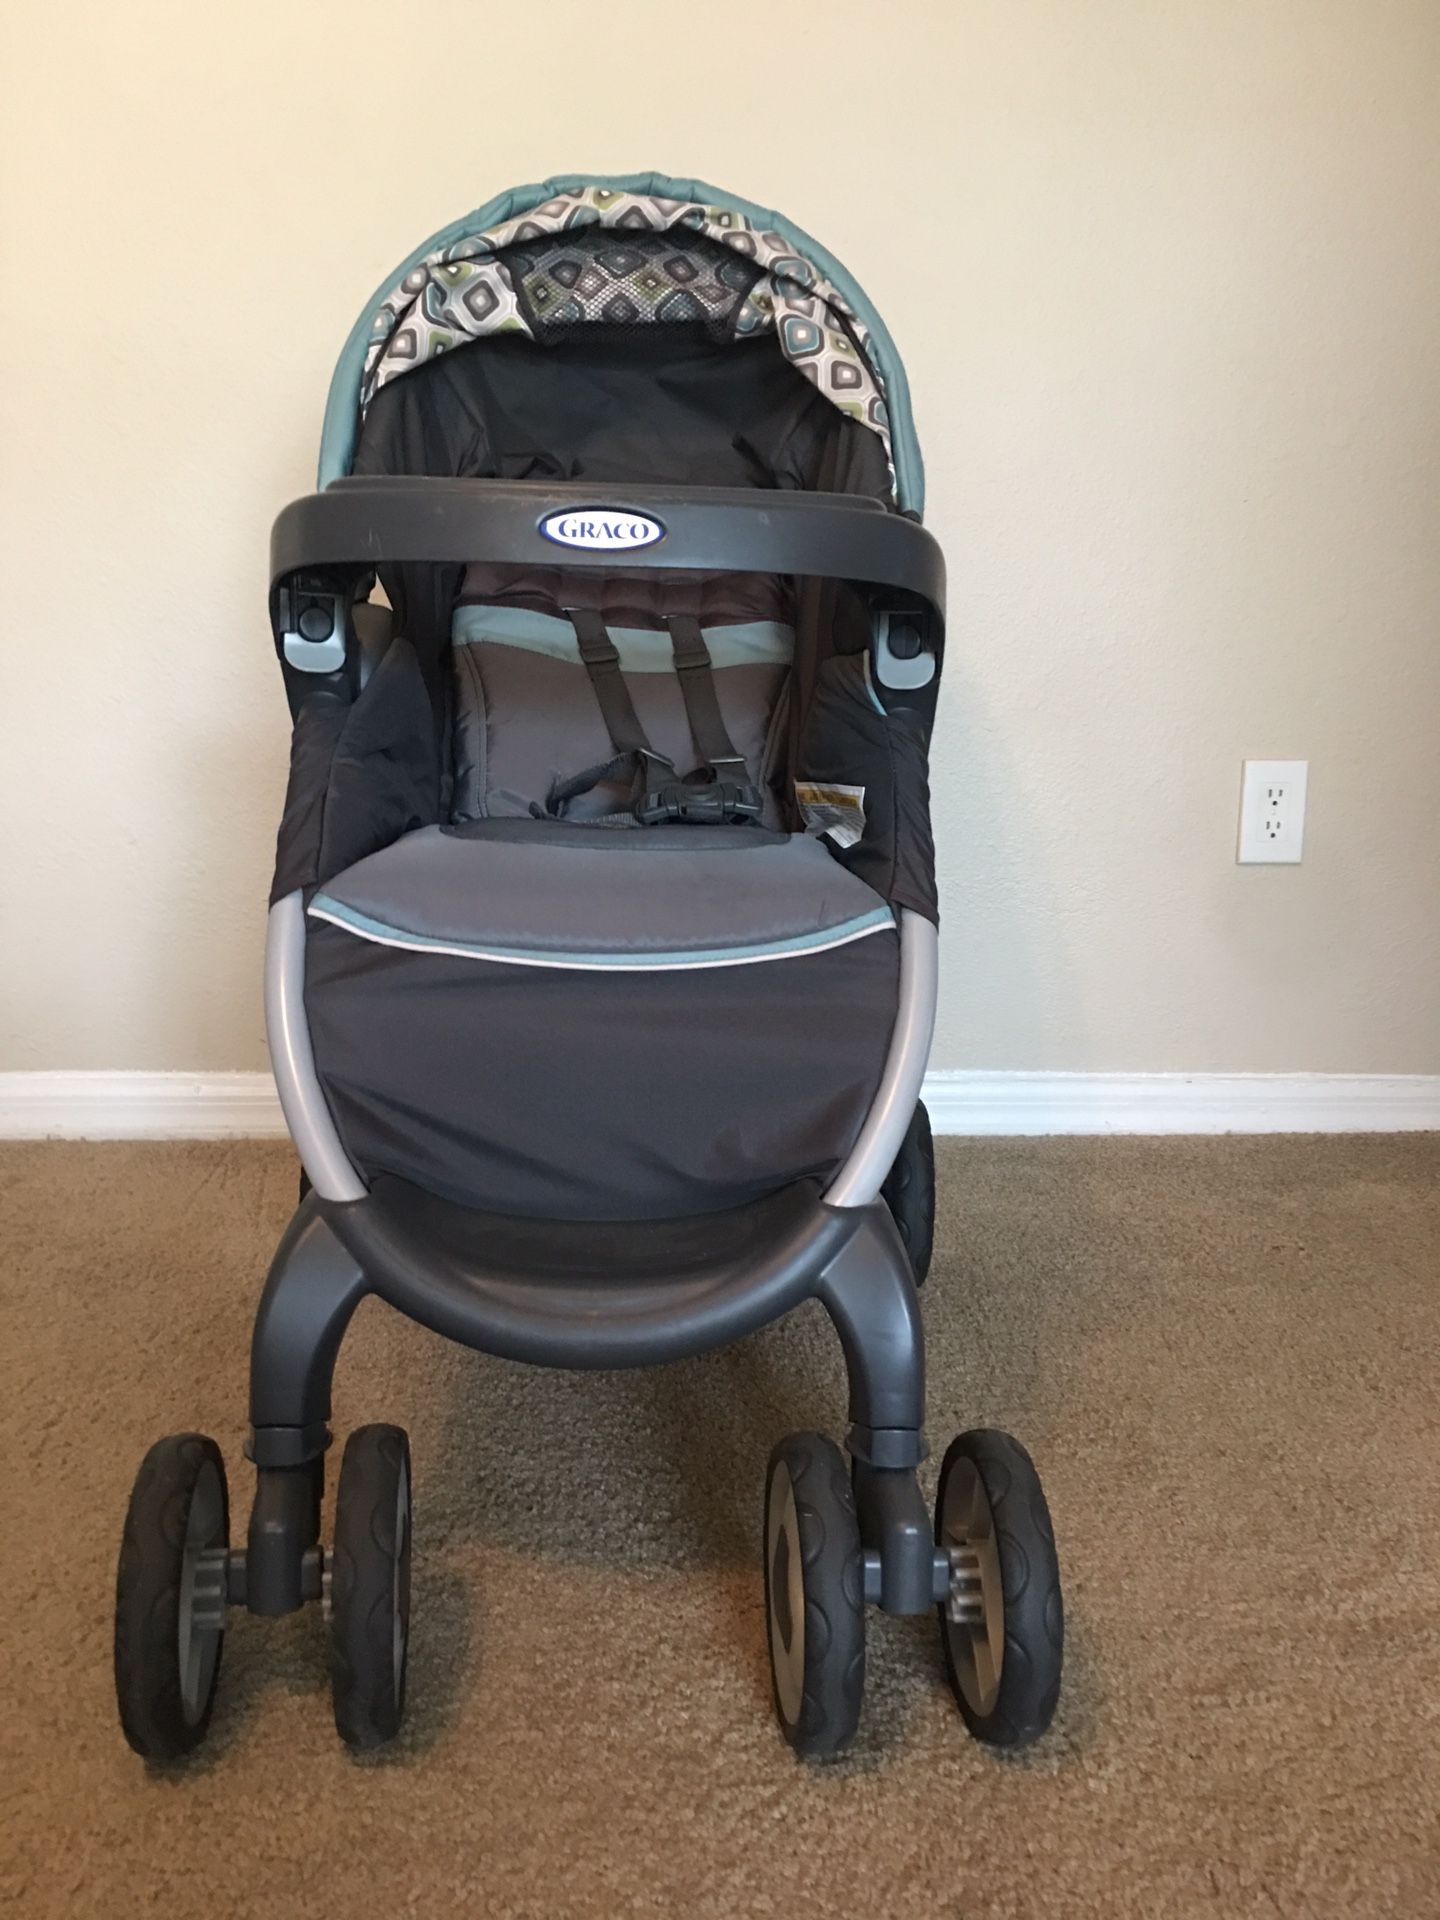 Immediate sale - Baby Stroller - GRACO